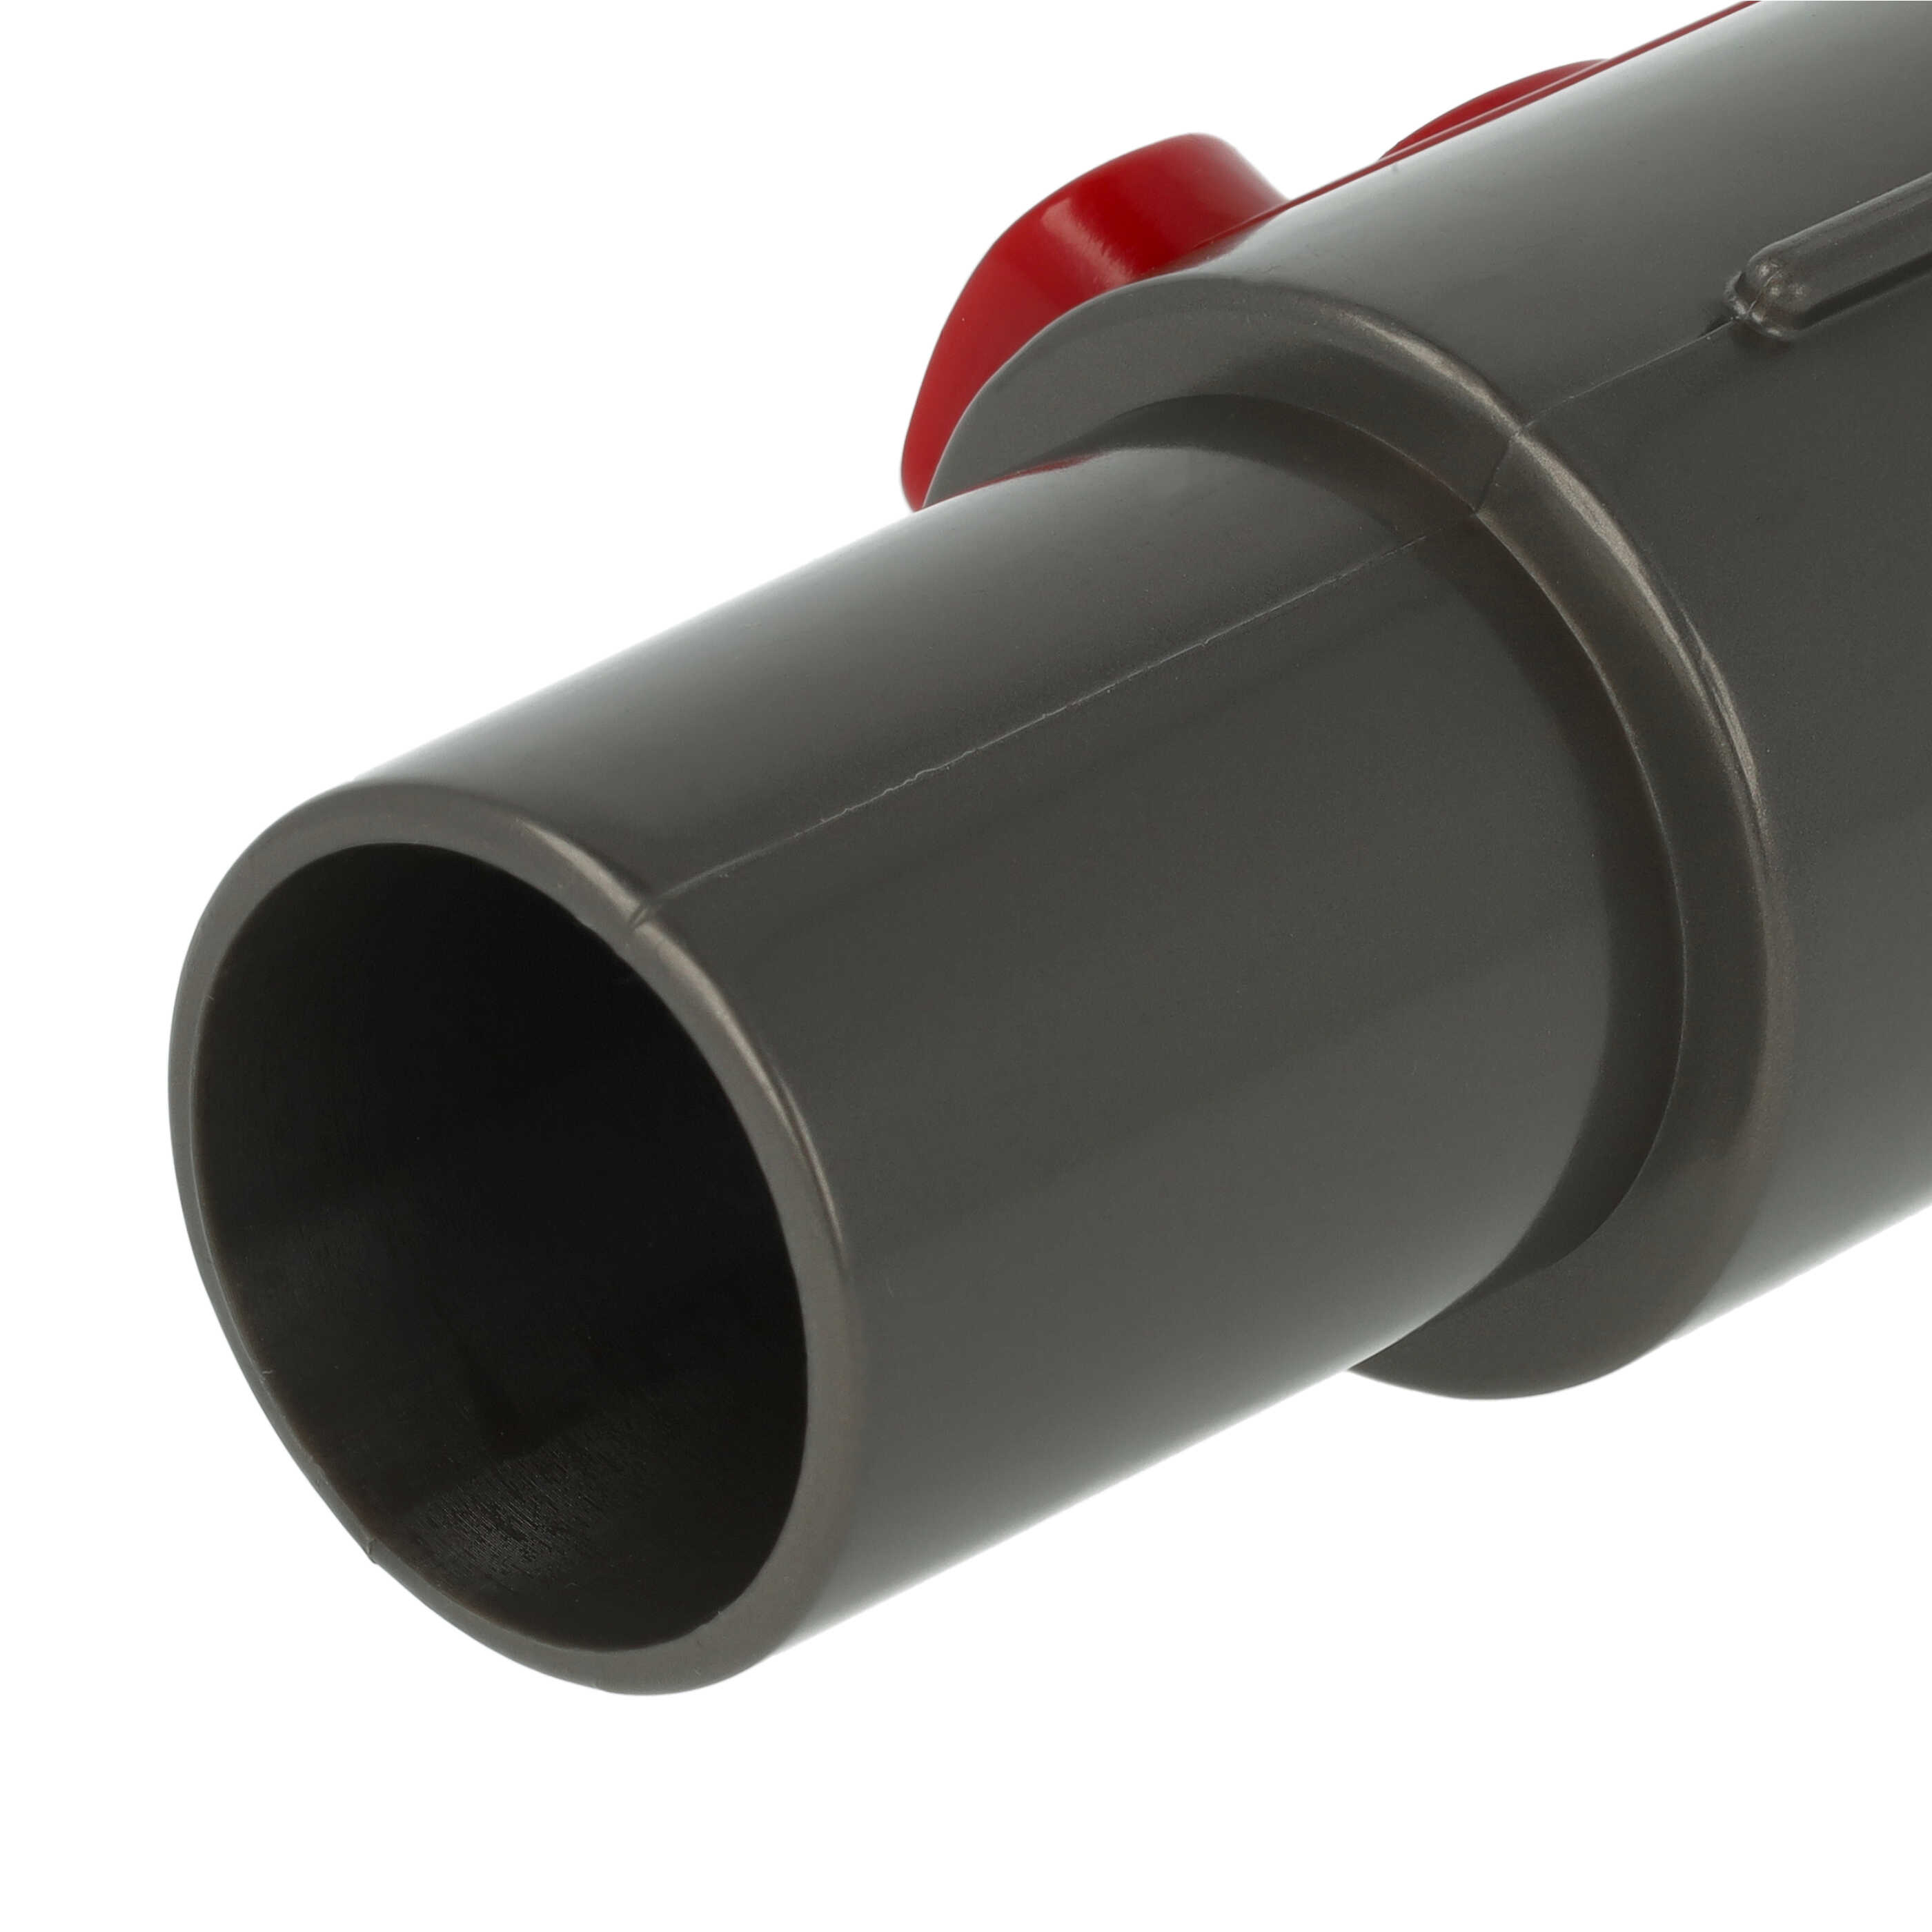 Raccordo con attacco accessori 32mm per aspiratore - rosso / grigio scuro